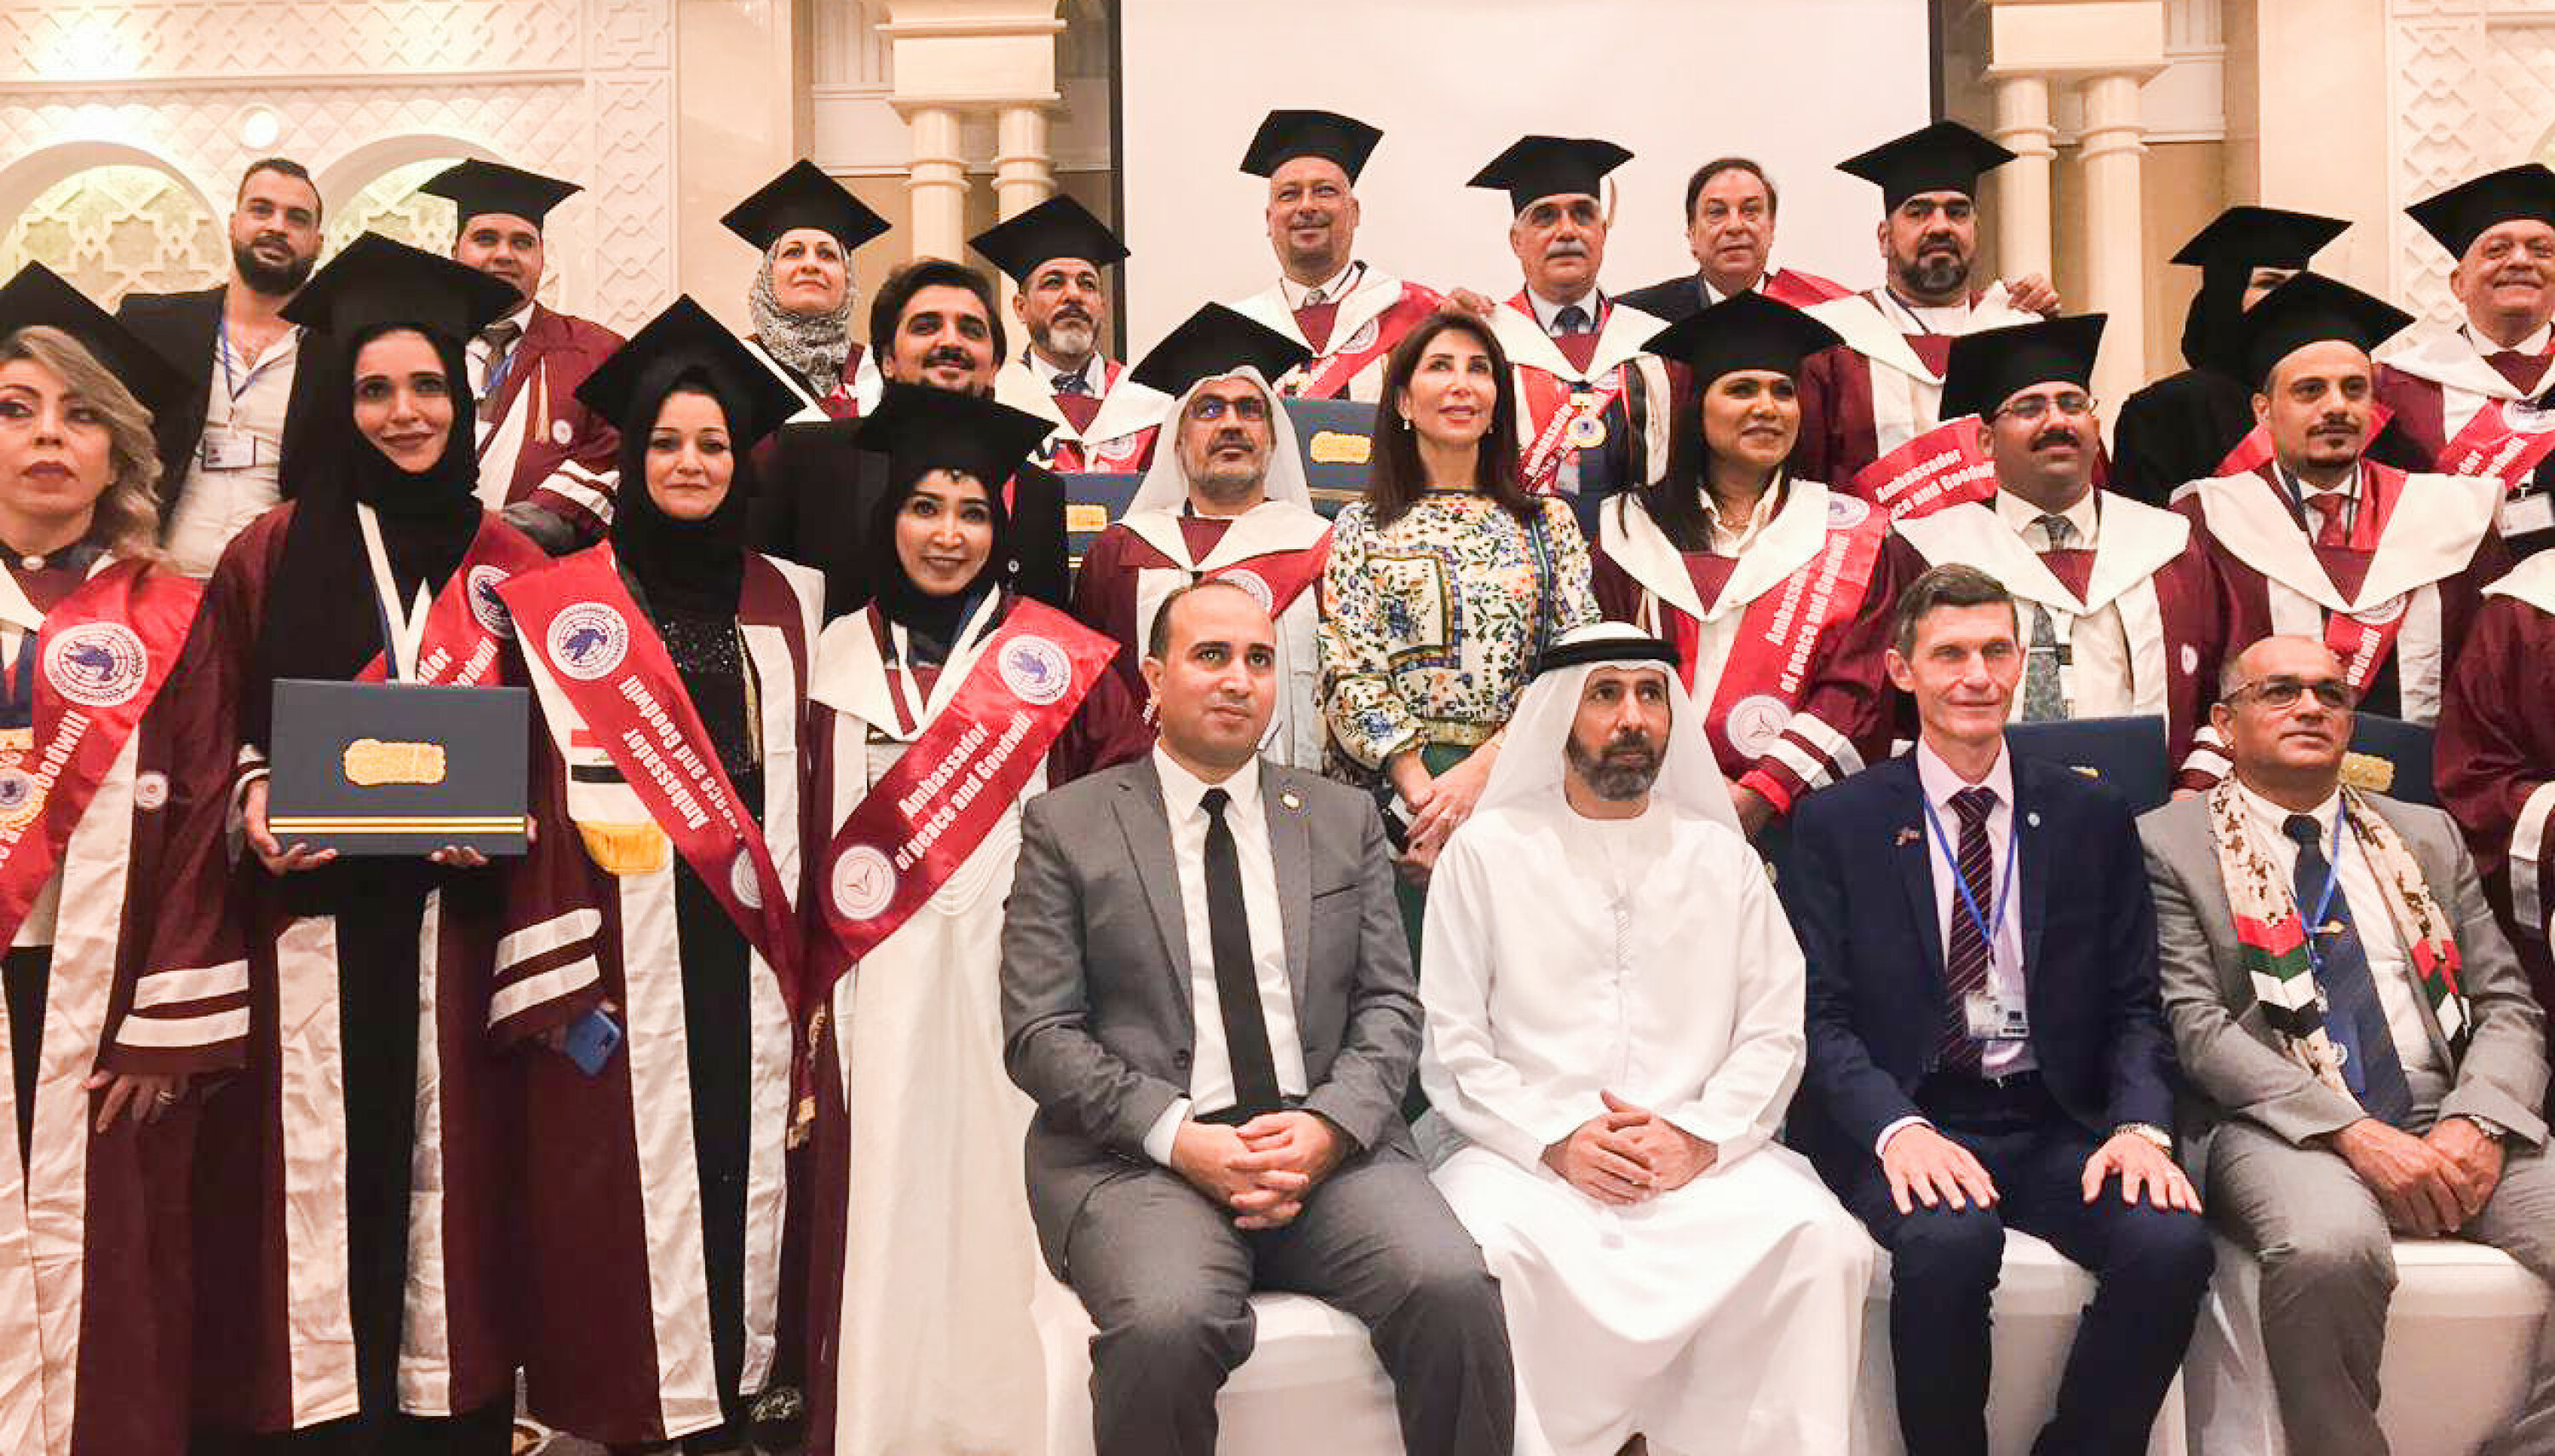 Slik så det ut da Jaf, nede til høyre, poserte sammen med de mange som mottok priser og æresdoktorgrader i De forente arabiske emirater i fjor.